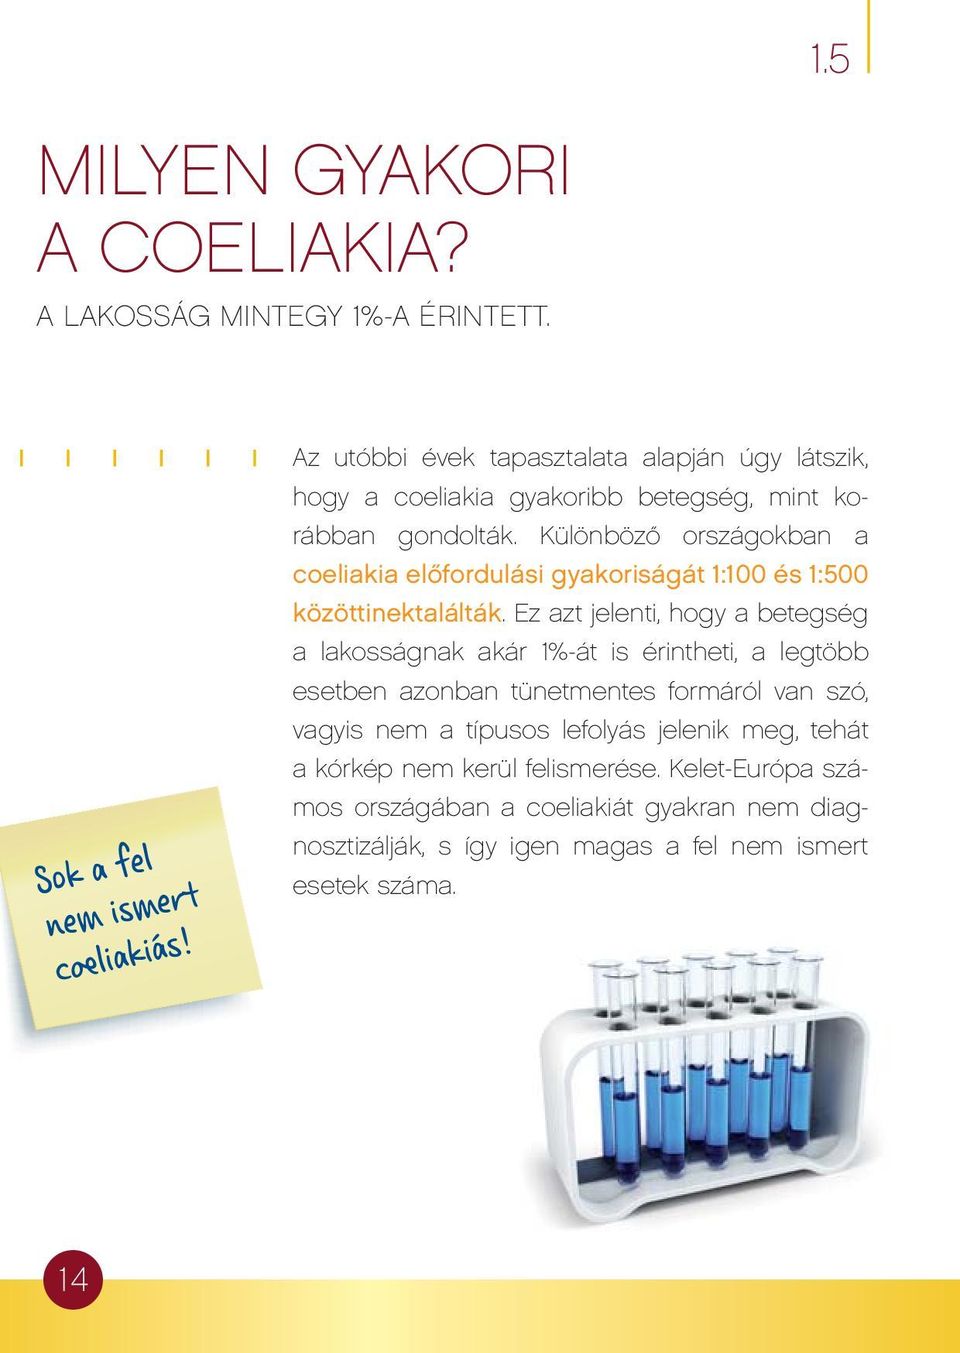 Különböző országokban a coeliakia előfordulási gyakoriságát 1:100 és 1:500 közöttinektalálták.